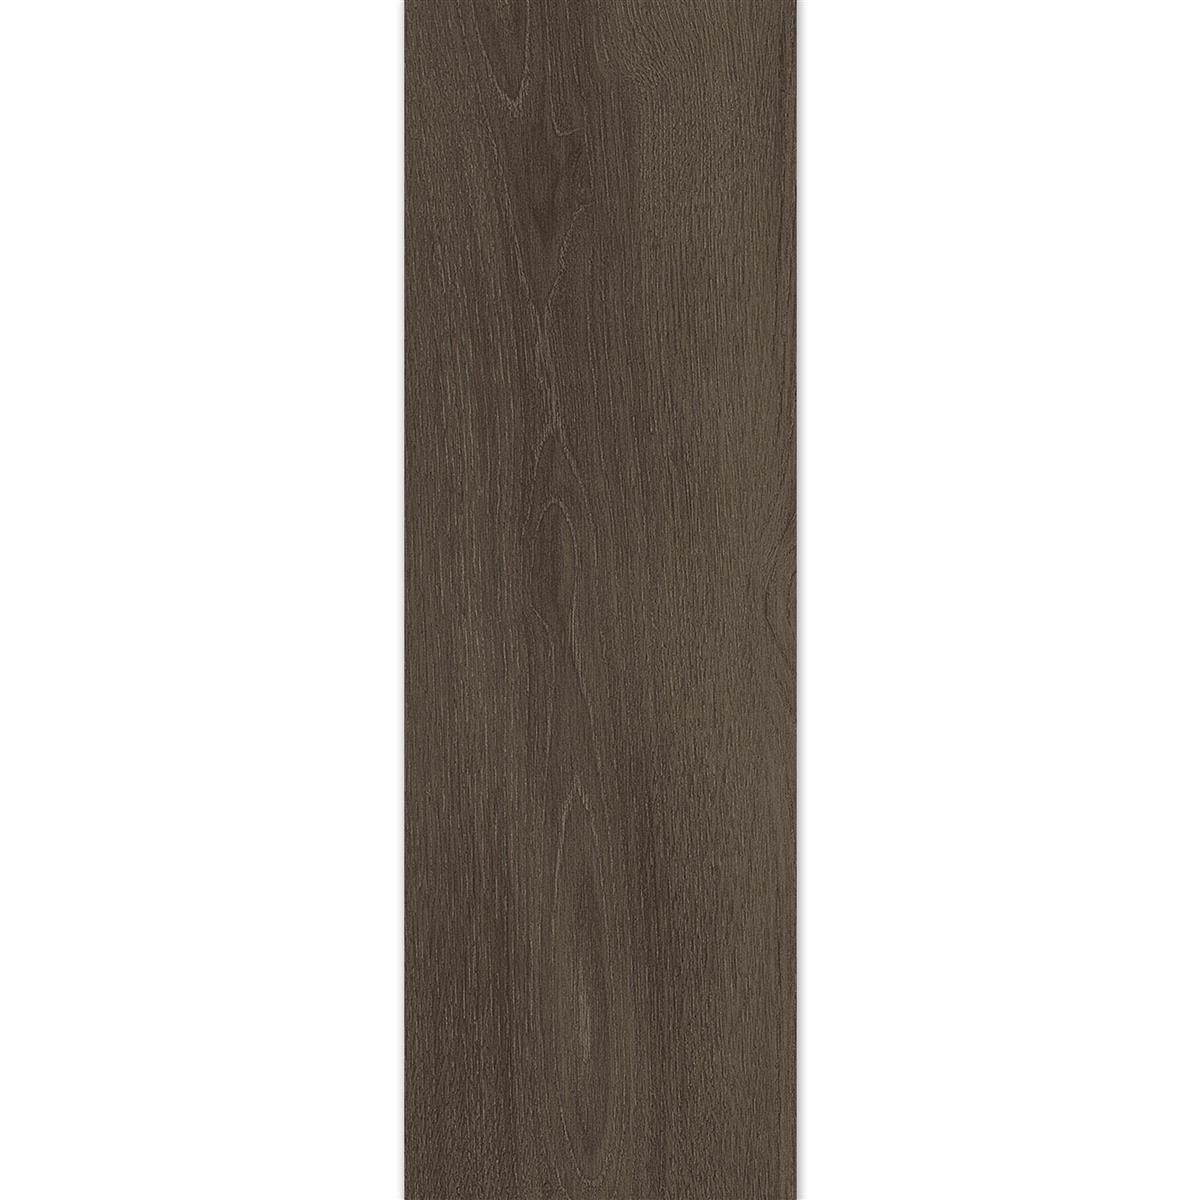 Floor Tiles Regina Wood Optic 20x120cm Cacao